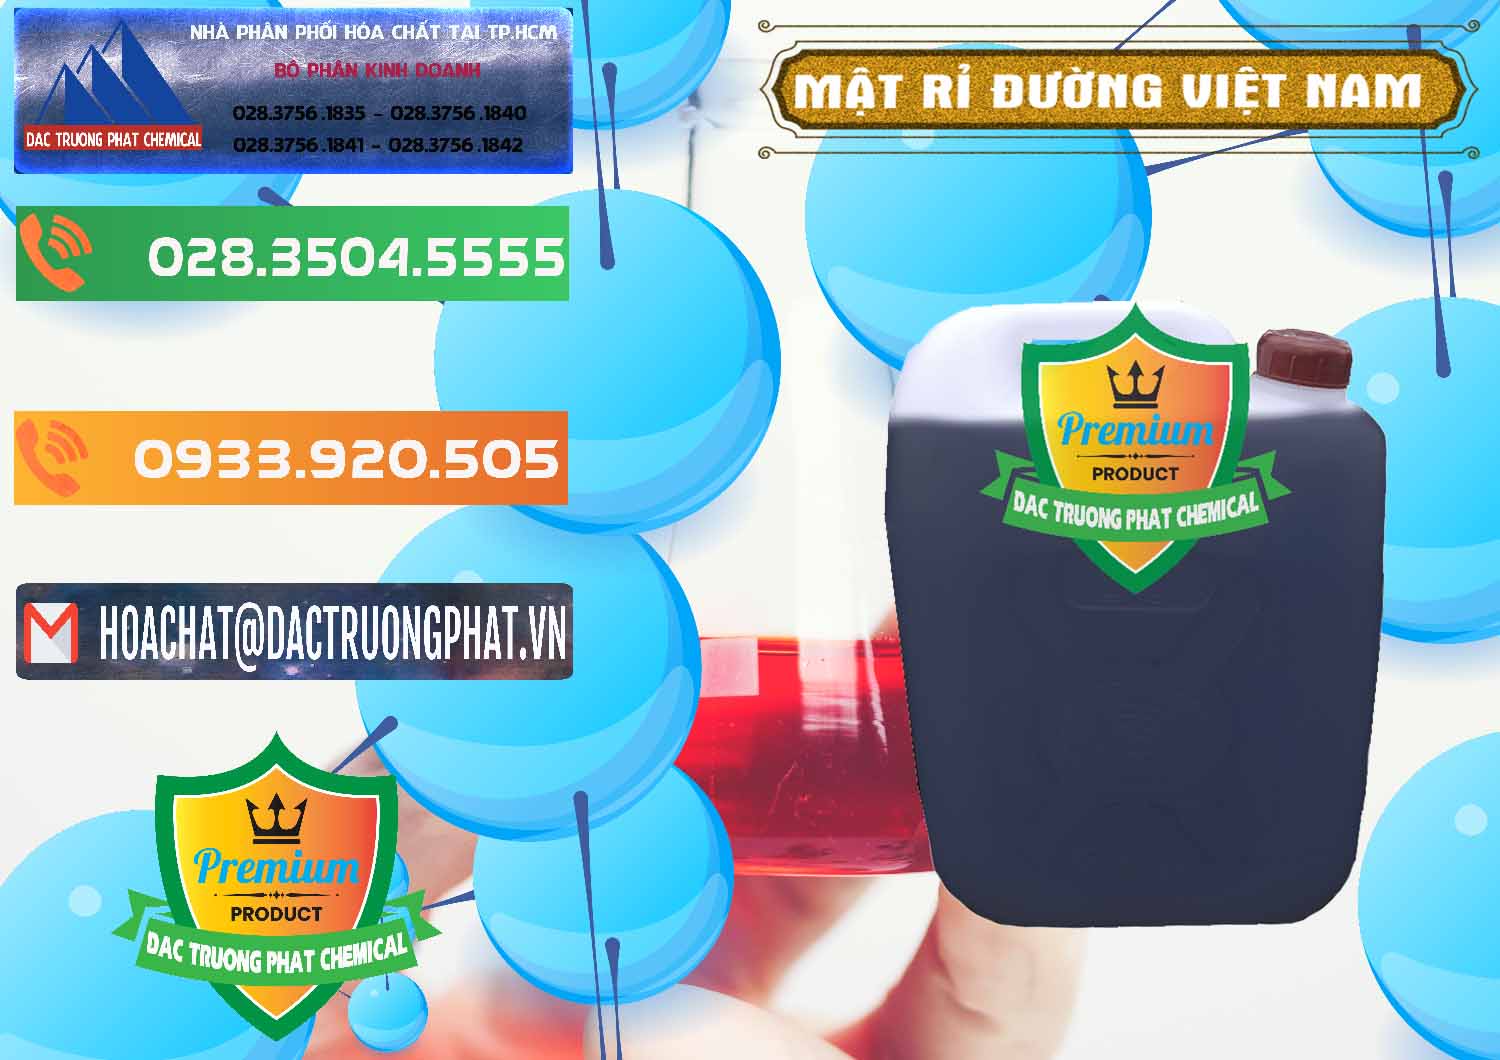 Nơi chuyên bán _ cung cấp Mật Rỉ Đường Việt Nam - 0306 - Đơn vị bán và cung cấp hóa chất tại TP.HCM - hoachatxulynuoc.com.vn